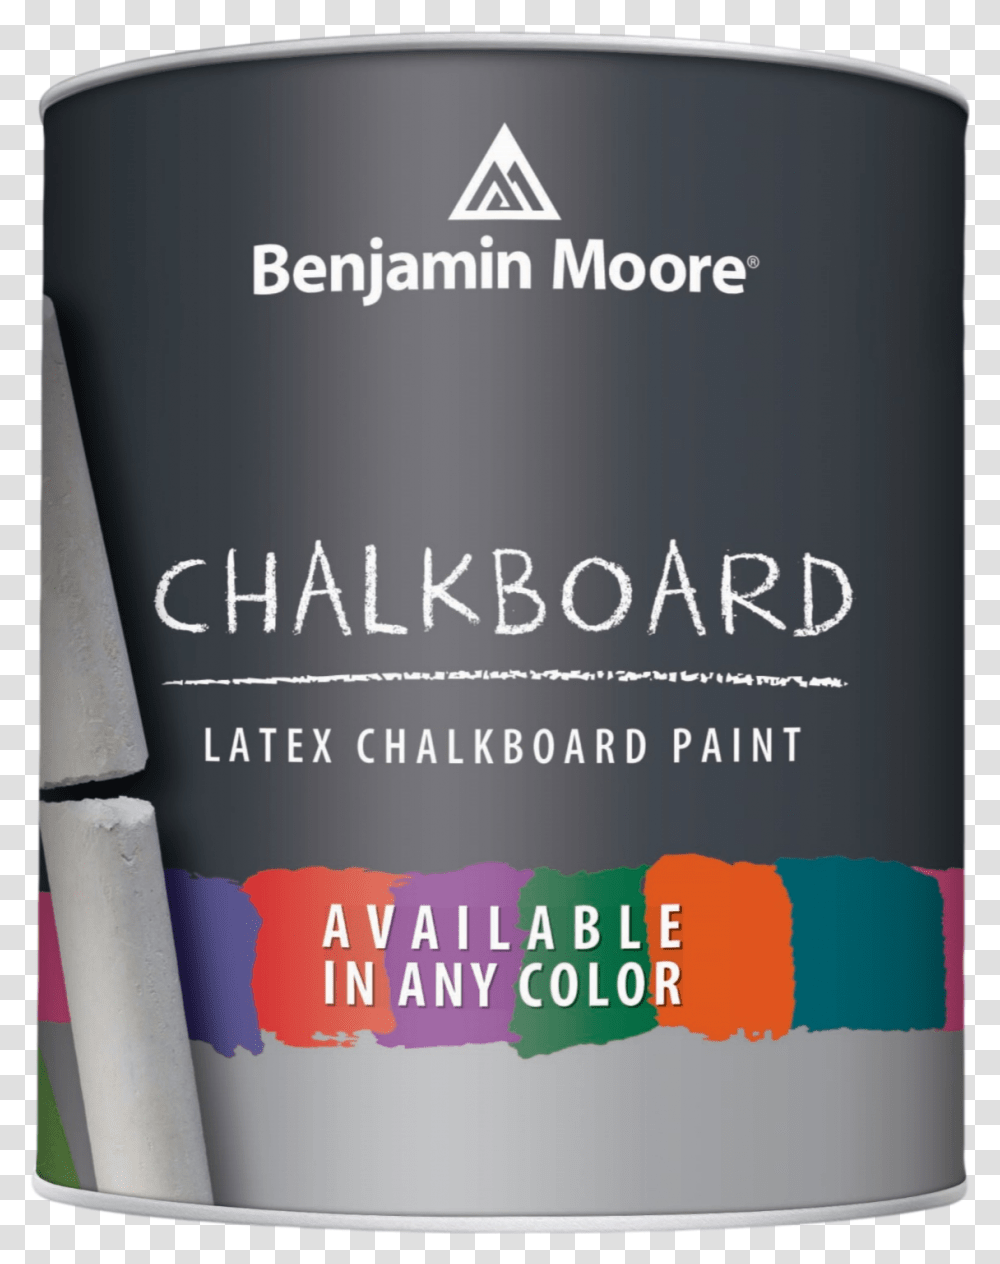 Benjamin Moore Chalkboard Paint, Paper, Bottle, Poster Transparent Png